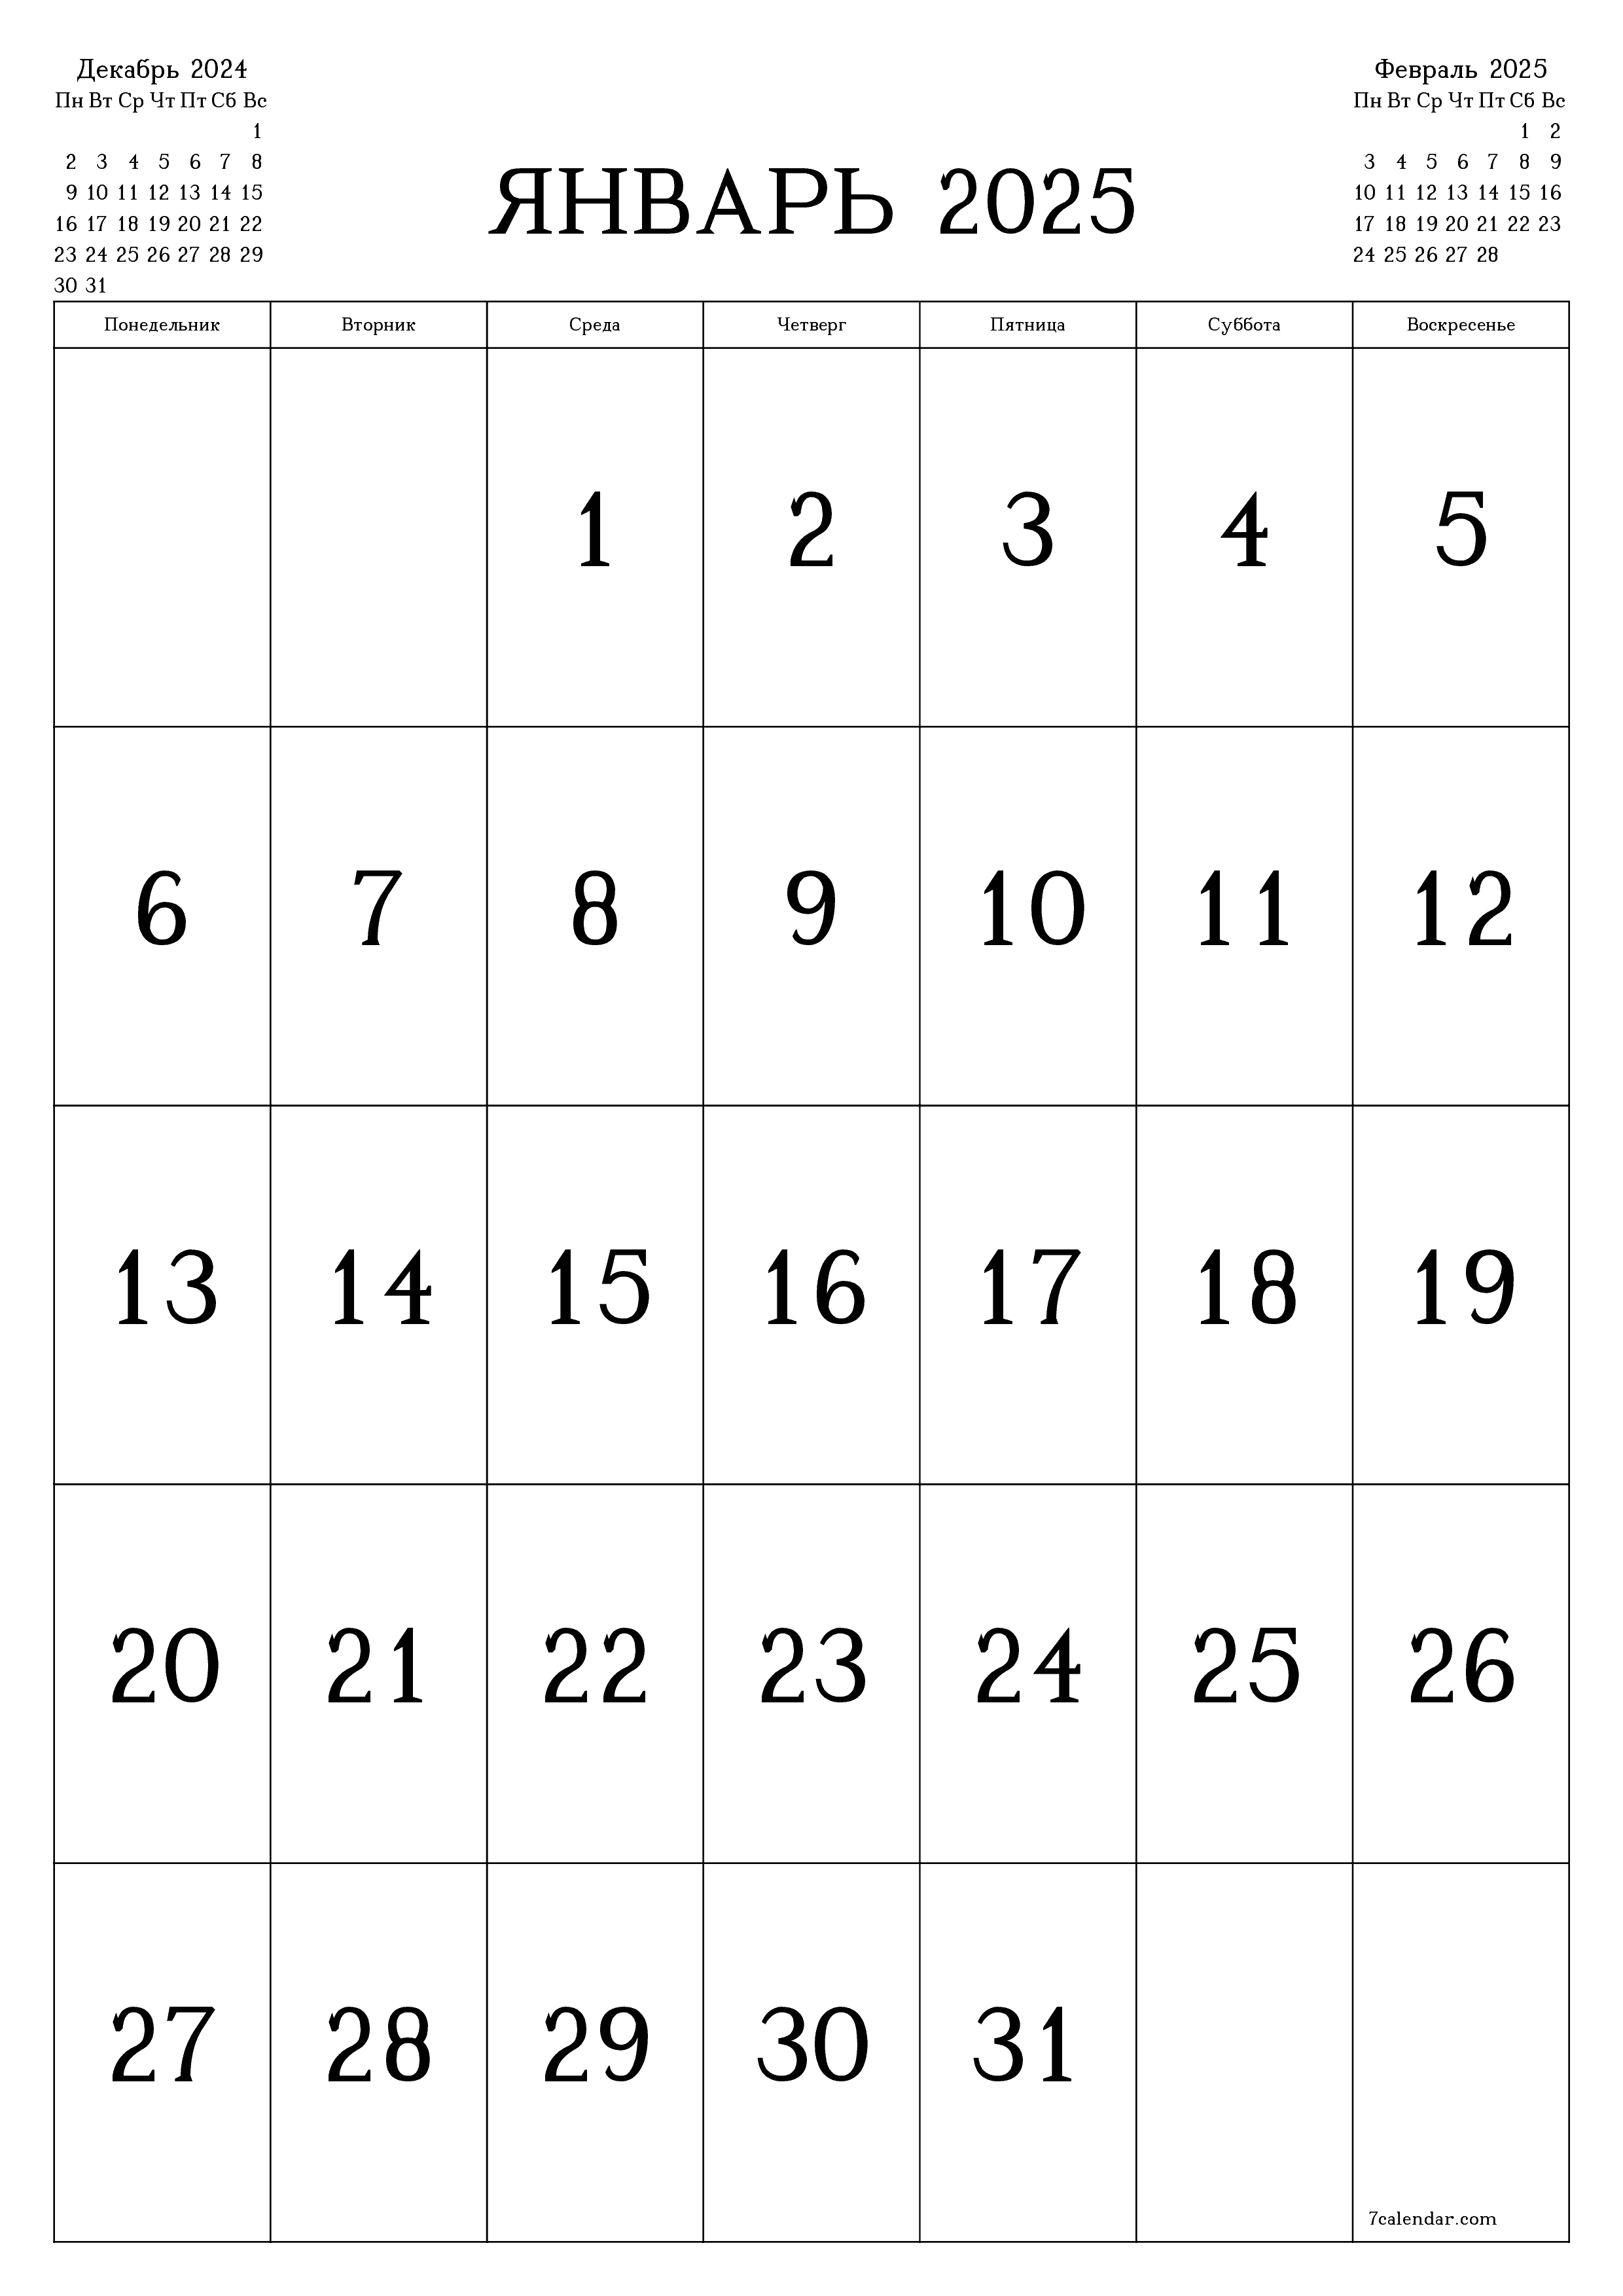 Календари и планеры для печати на месяц Январь 2025 A4, A3 в PDF и PNG -  7calendar